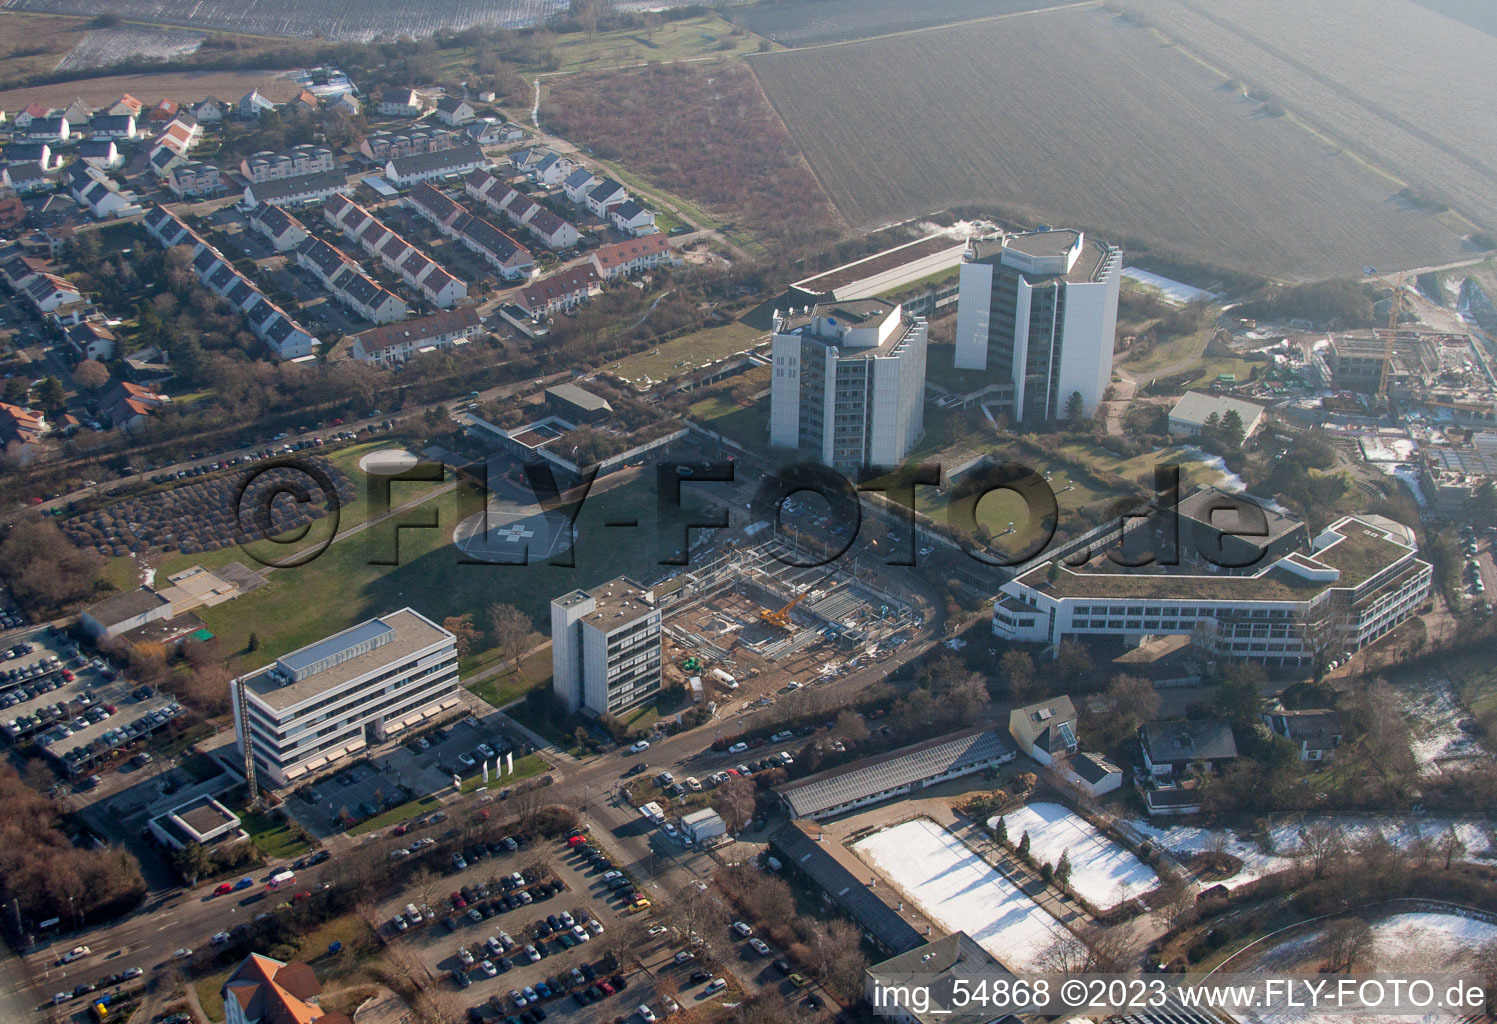 Photographie aérienne de Terrain de la clinique de l'hôpital BG Klinik Ludwigshafen à le quartier Oggersheim in Ludwigshafen am Rhein dans le département Rhénanie-Palatinat, Allemagne